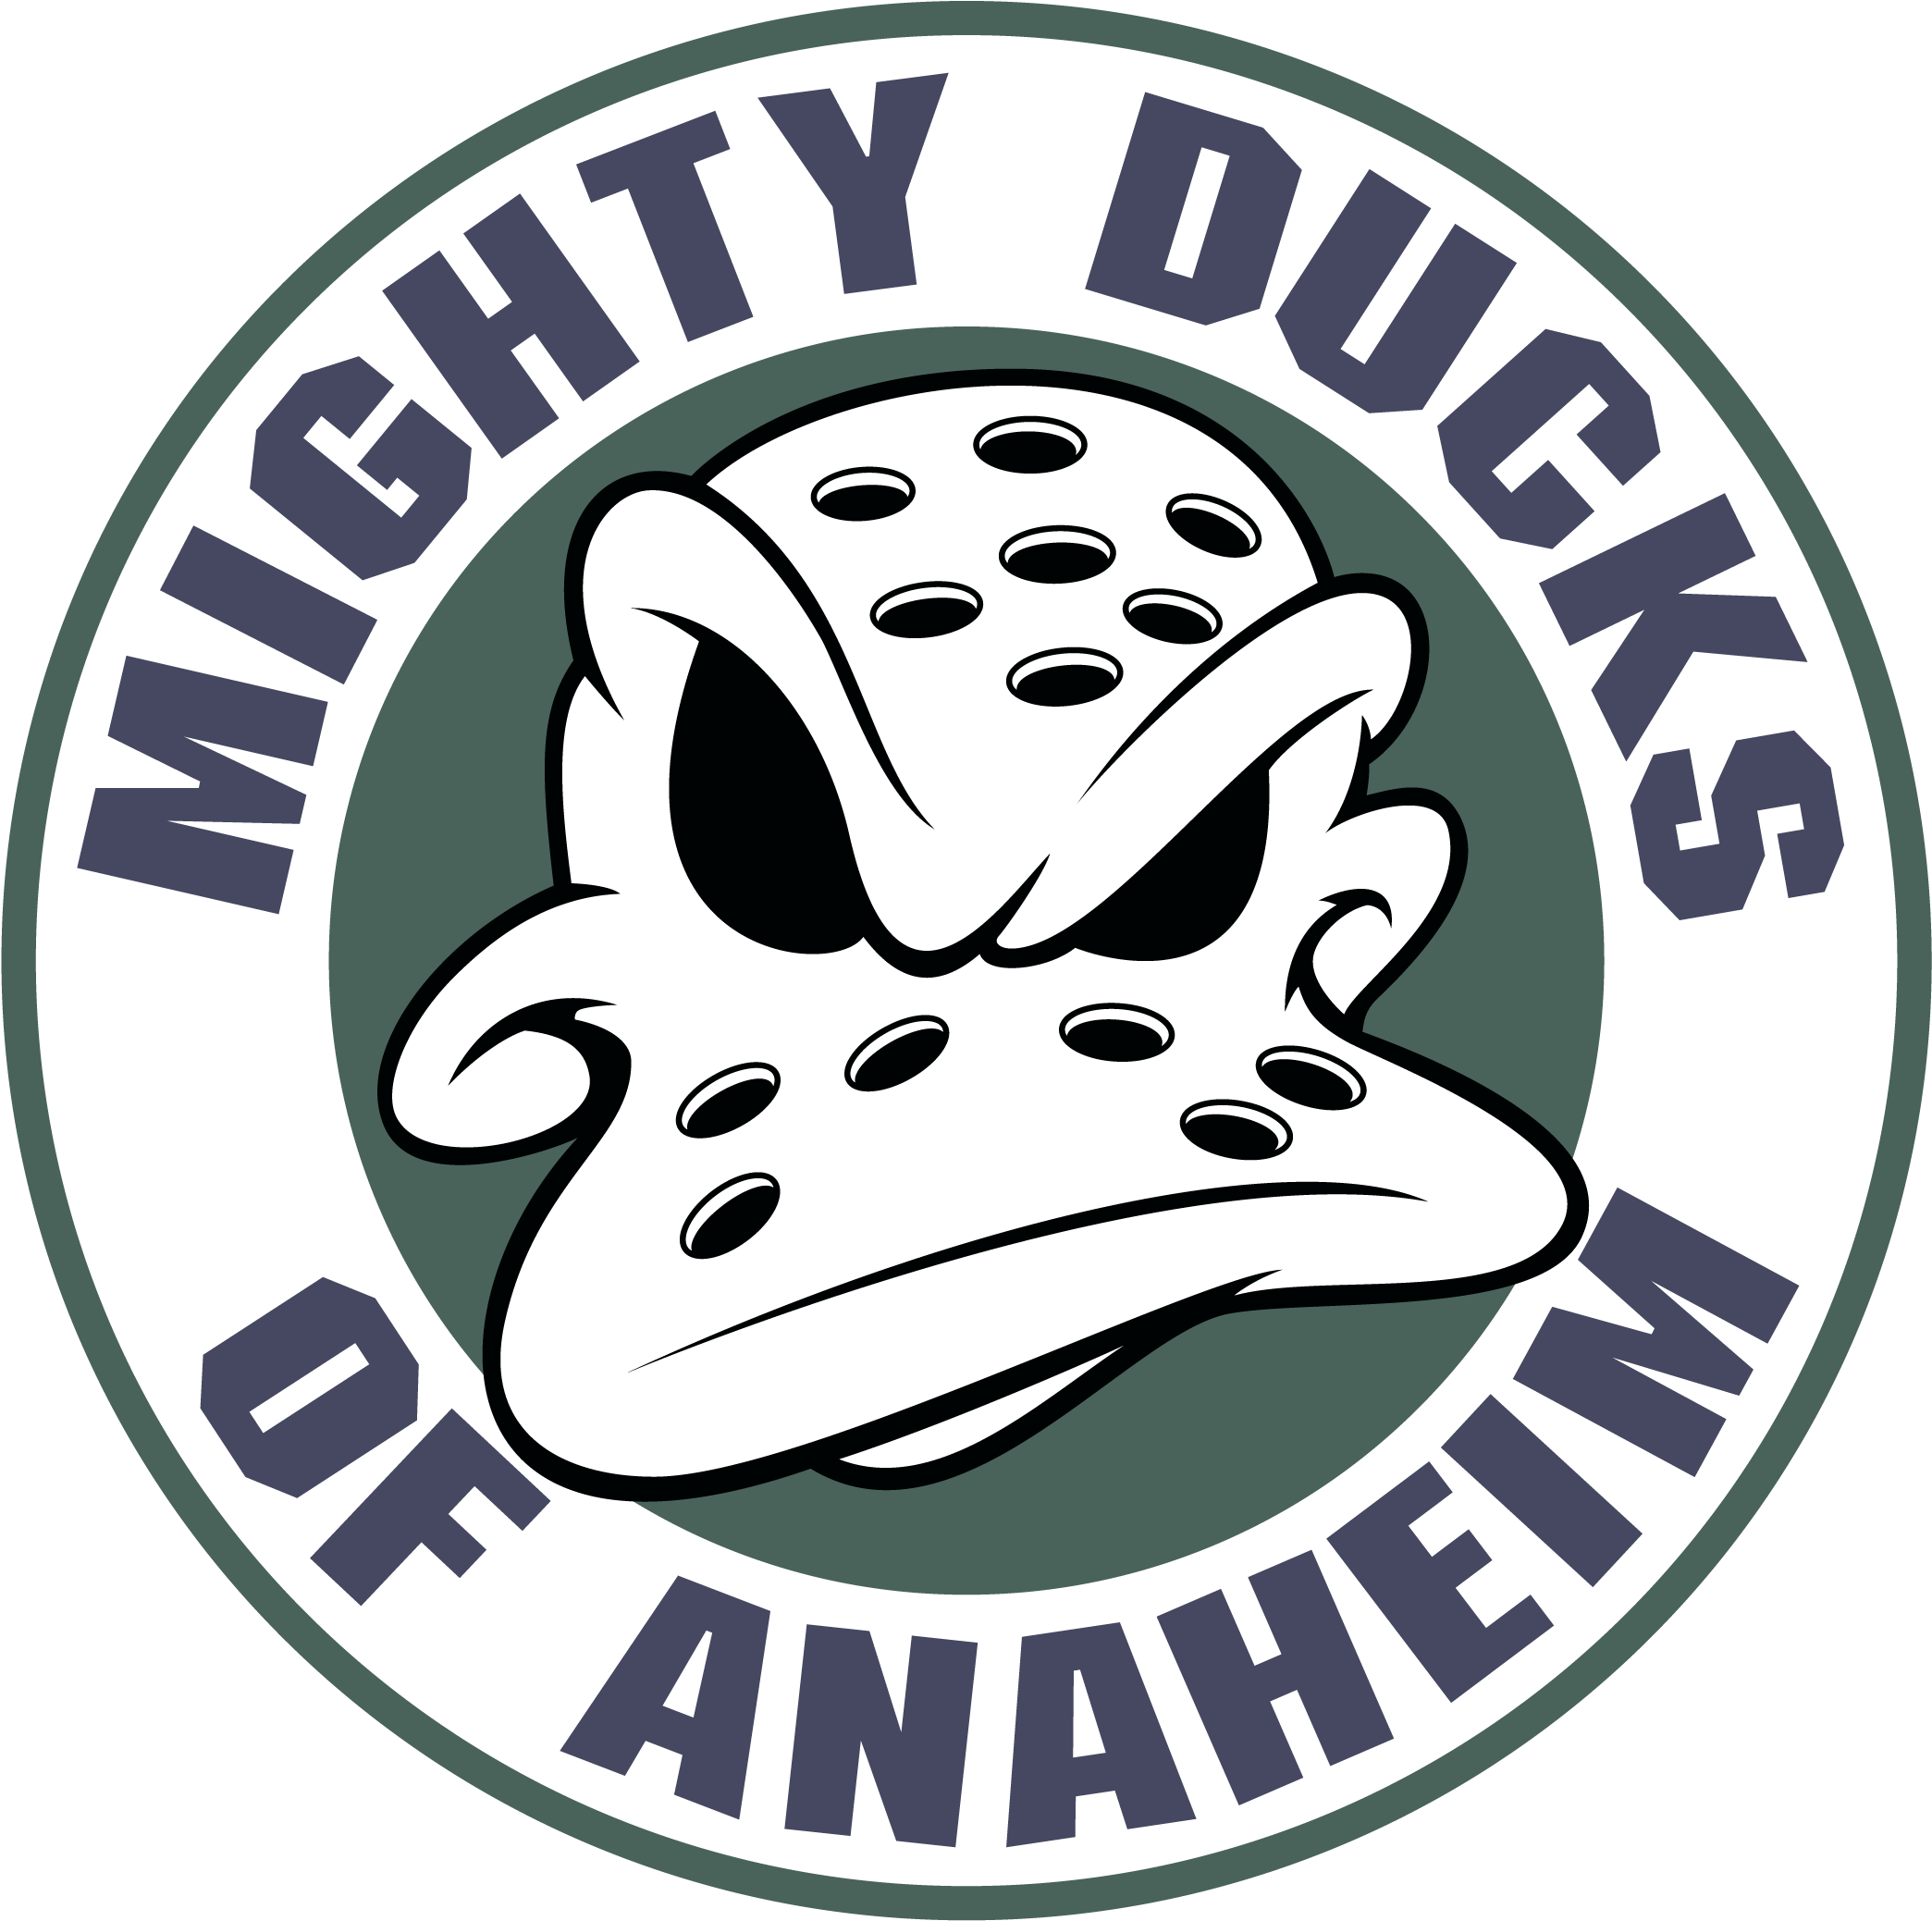 Anaheim Ducks Sign - Anaheim Ducks (3840x2160), Png Download